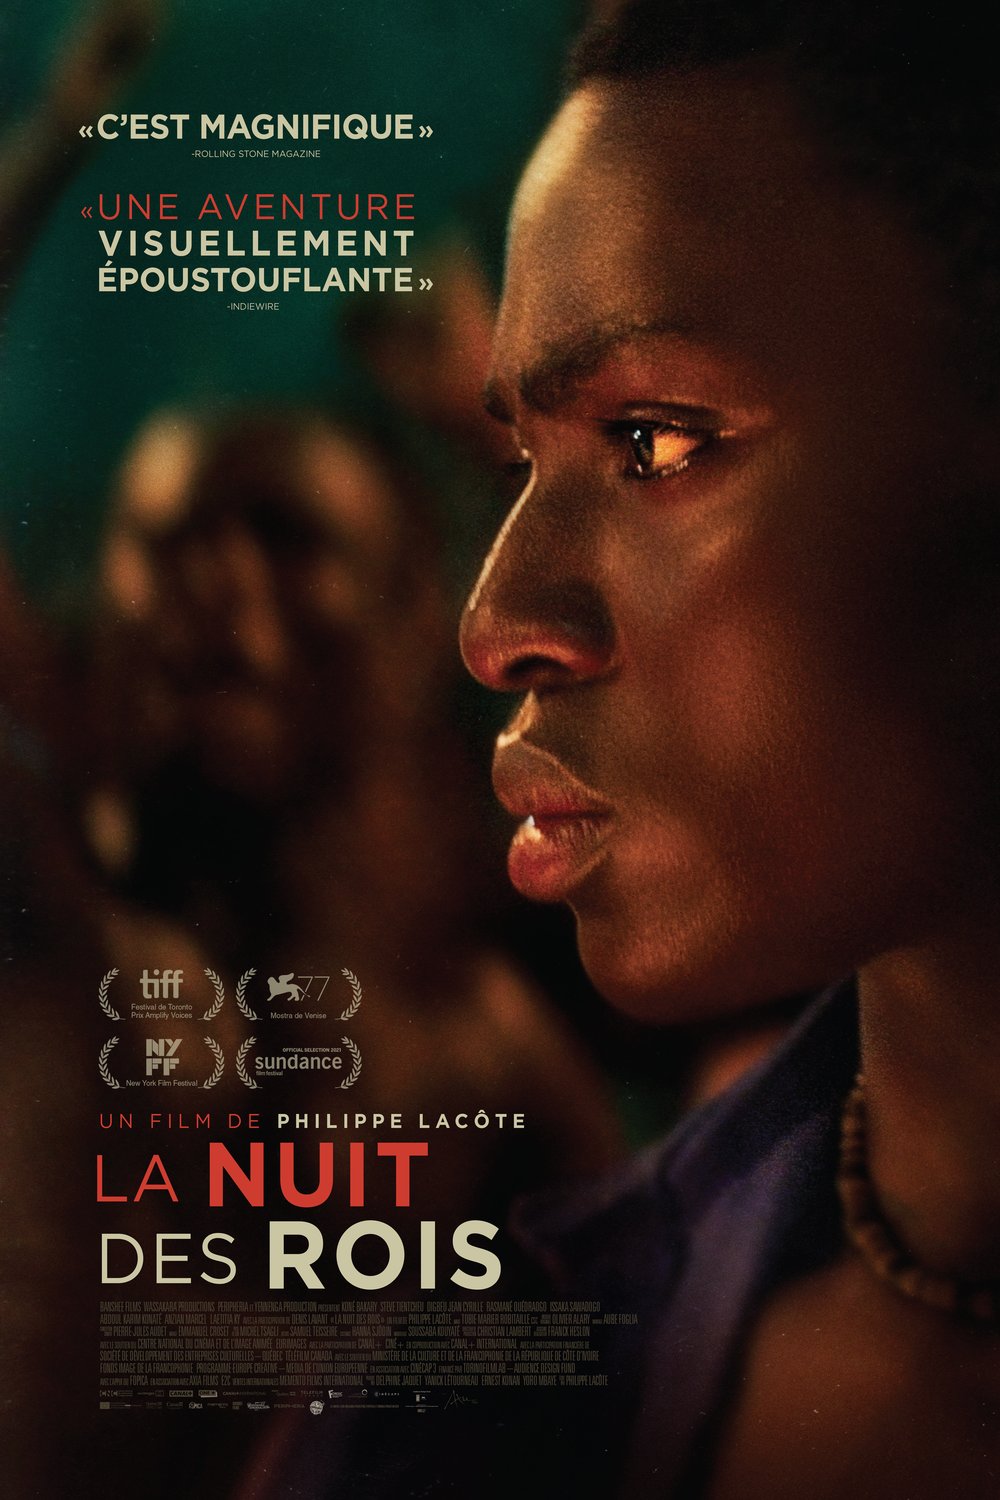 Poster of the movie La nuit des rois